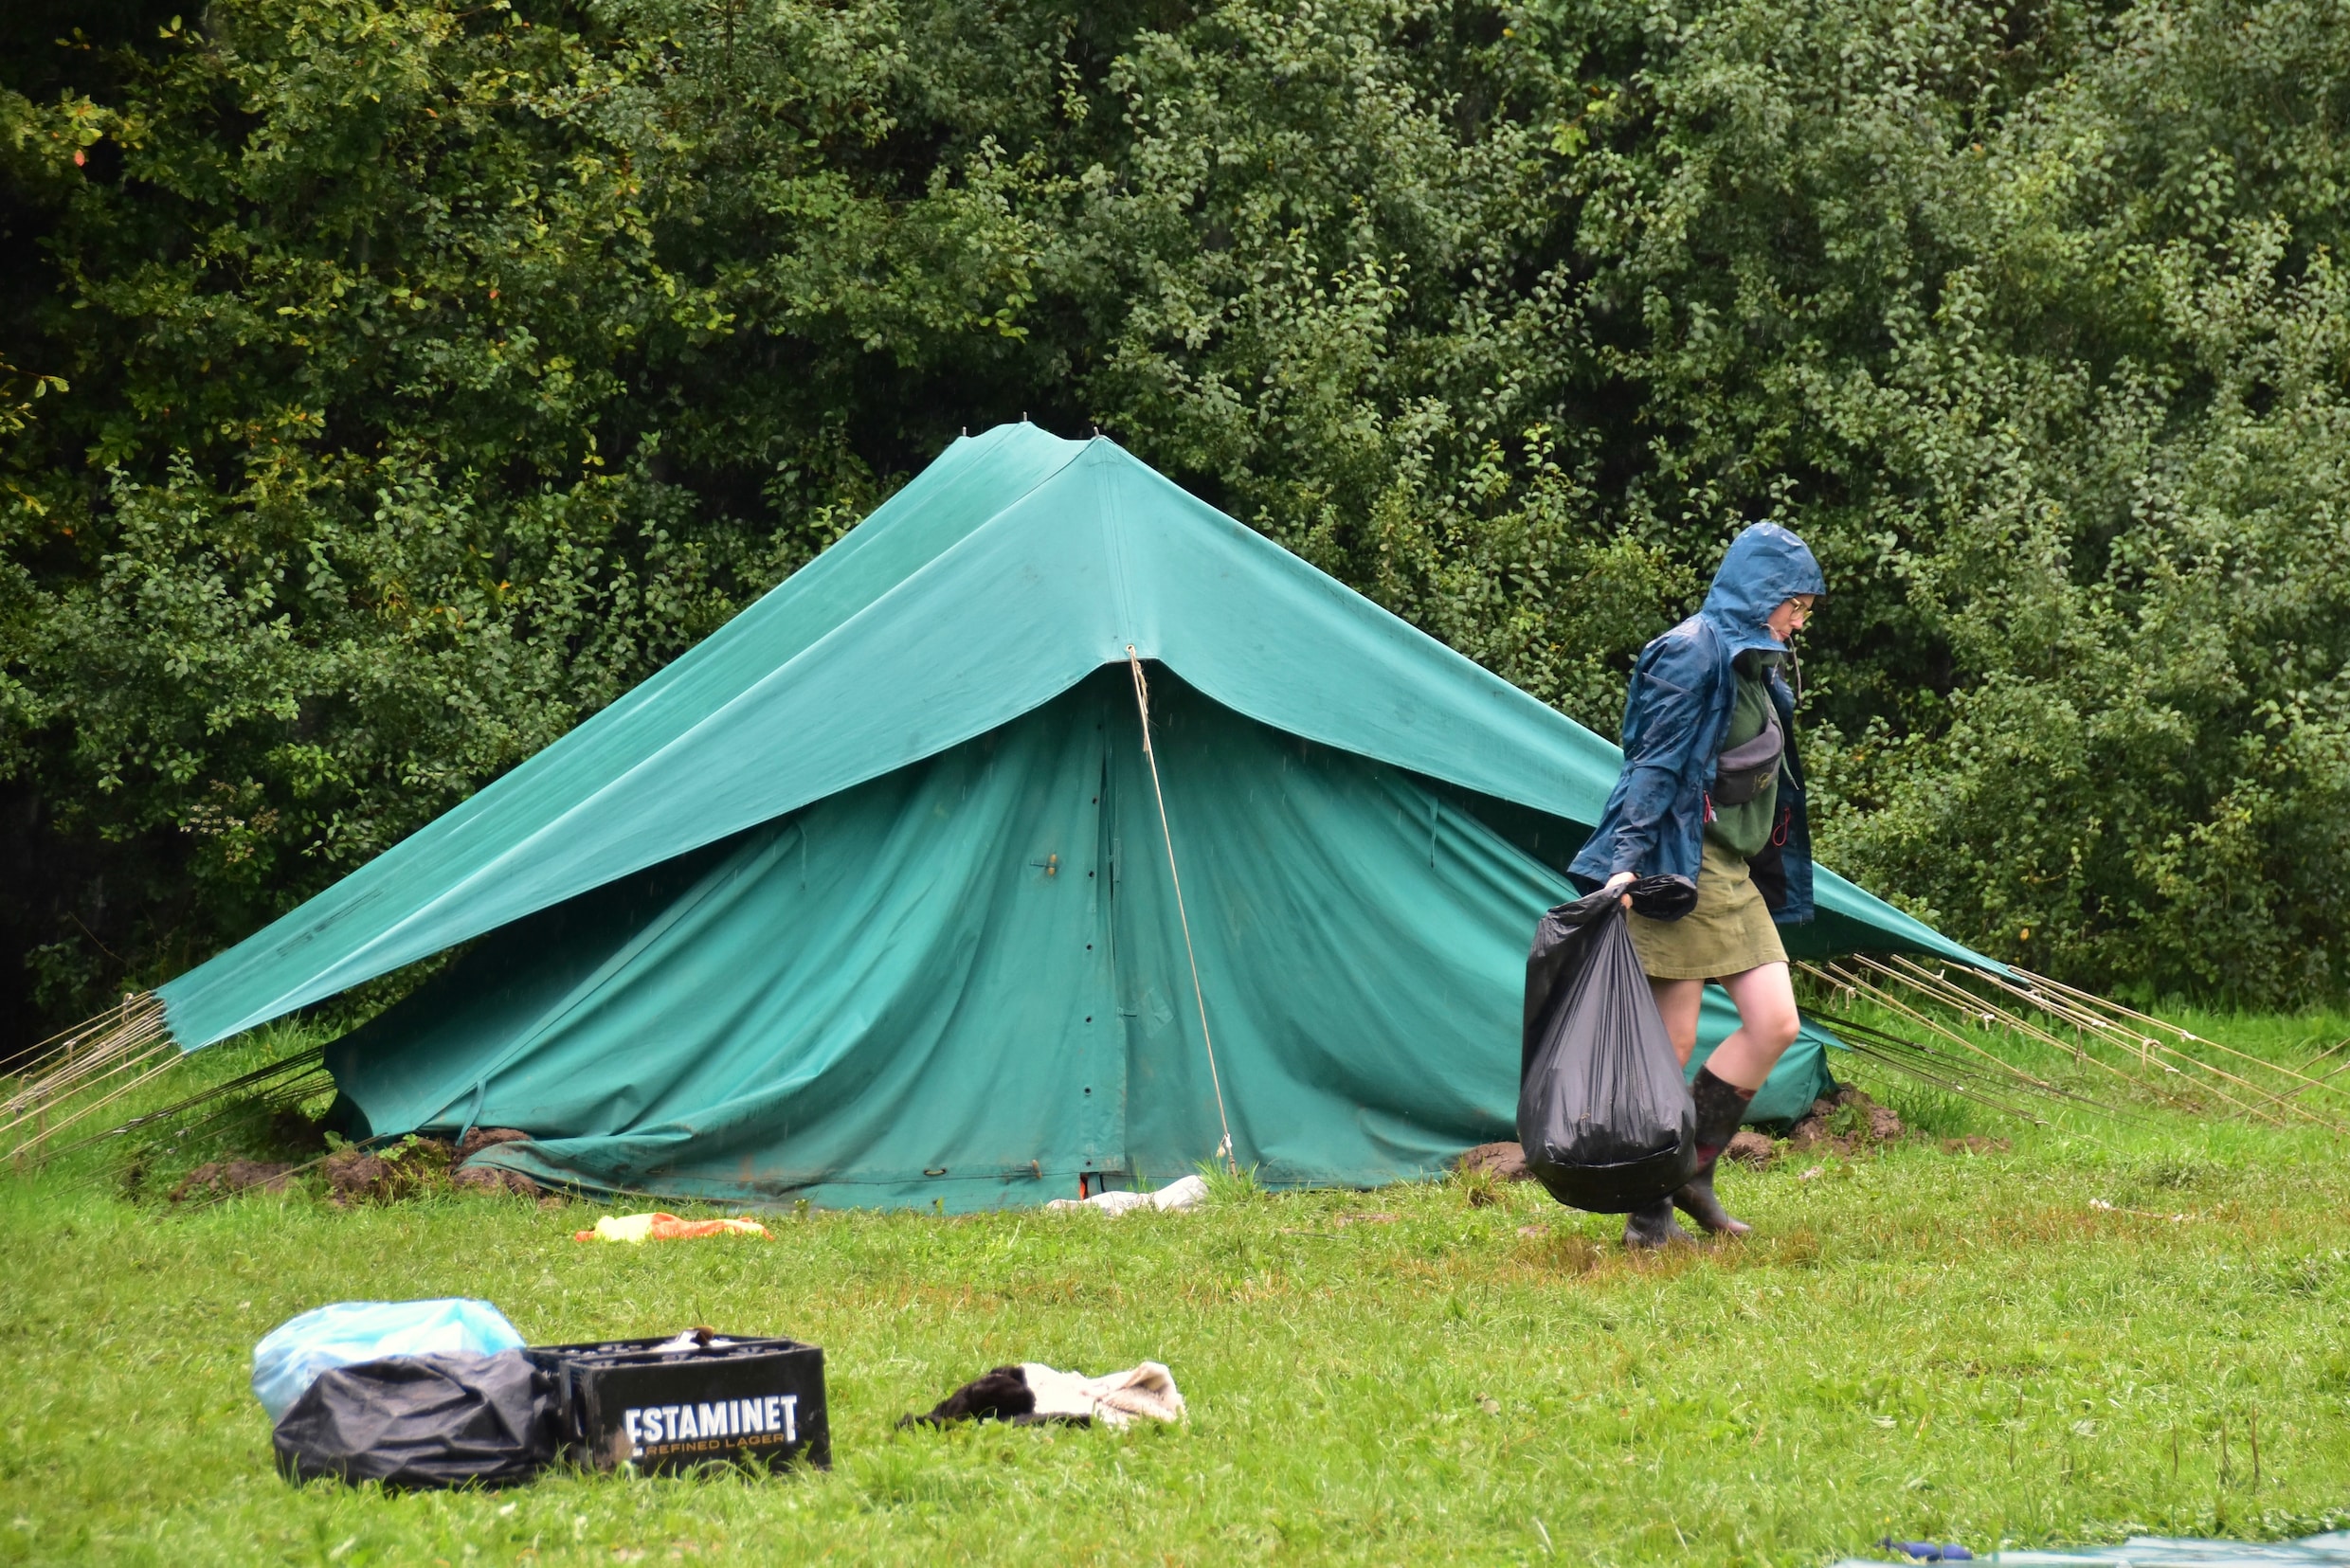 ‘Voelen ons niet meer veilig’: scoutsgroep zet kamp stop nadat leiding gluurder ontmaskert in de struiken